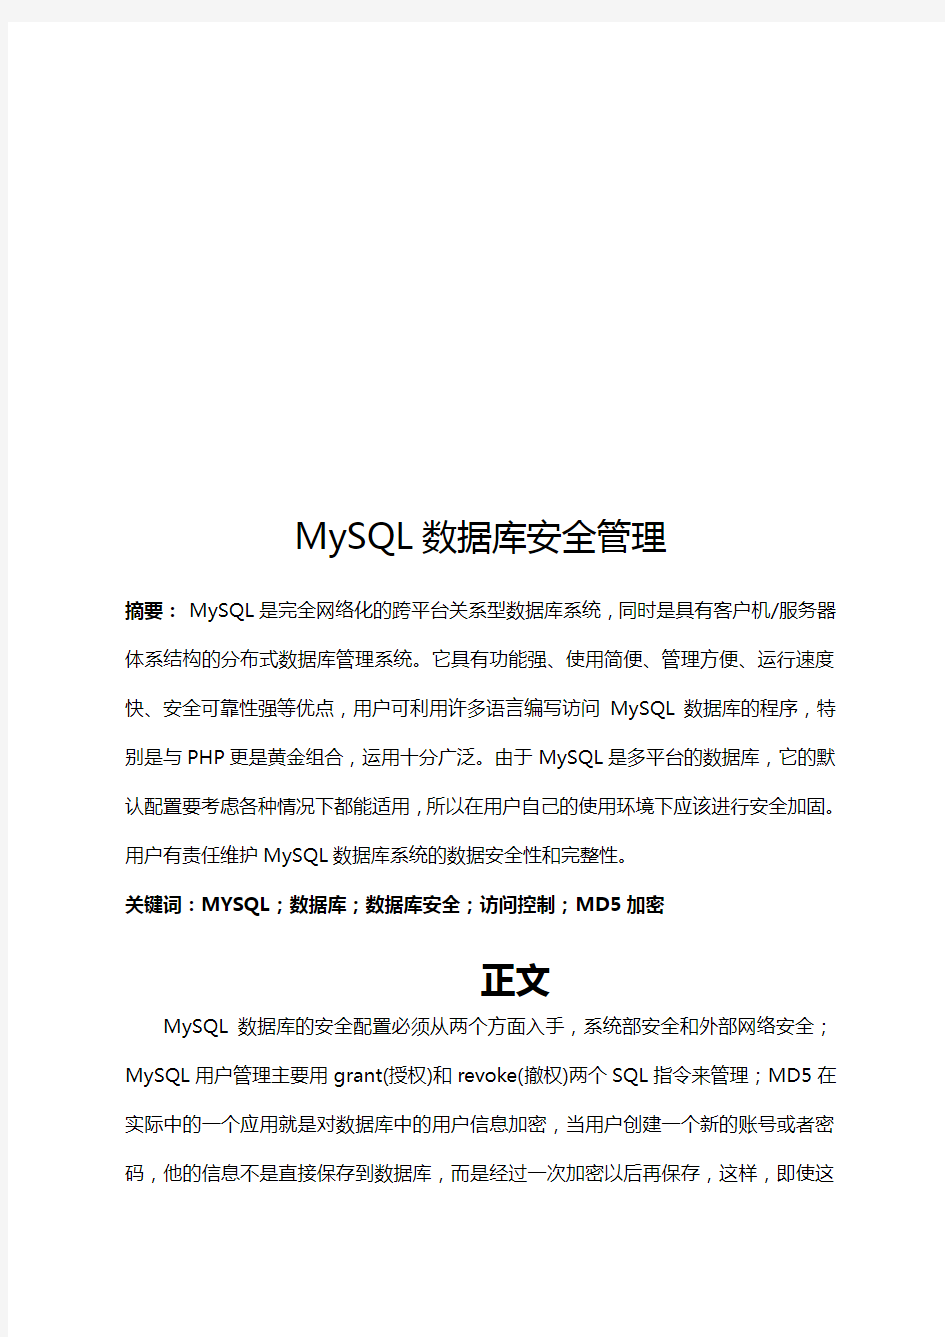 MYSQL数据库系统安全管理